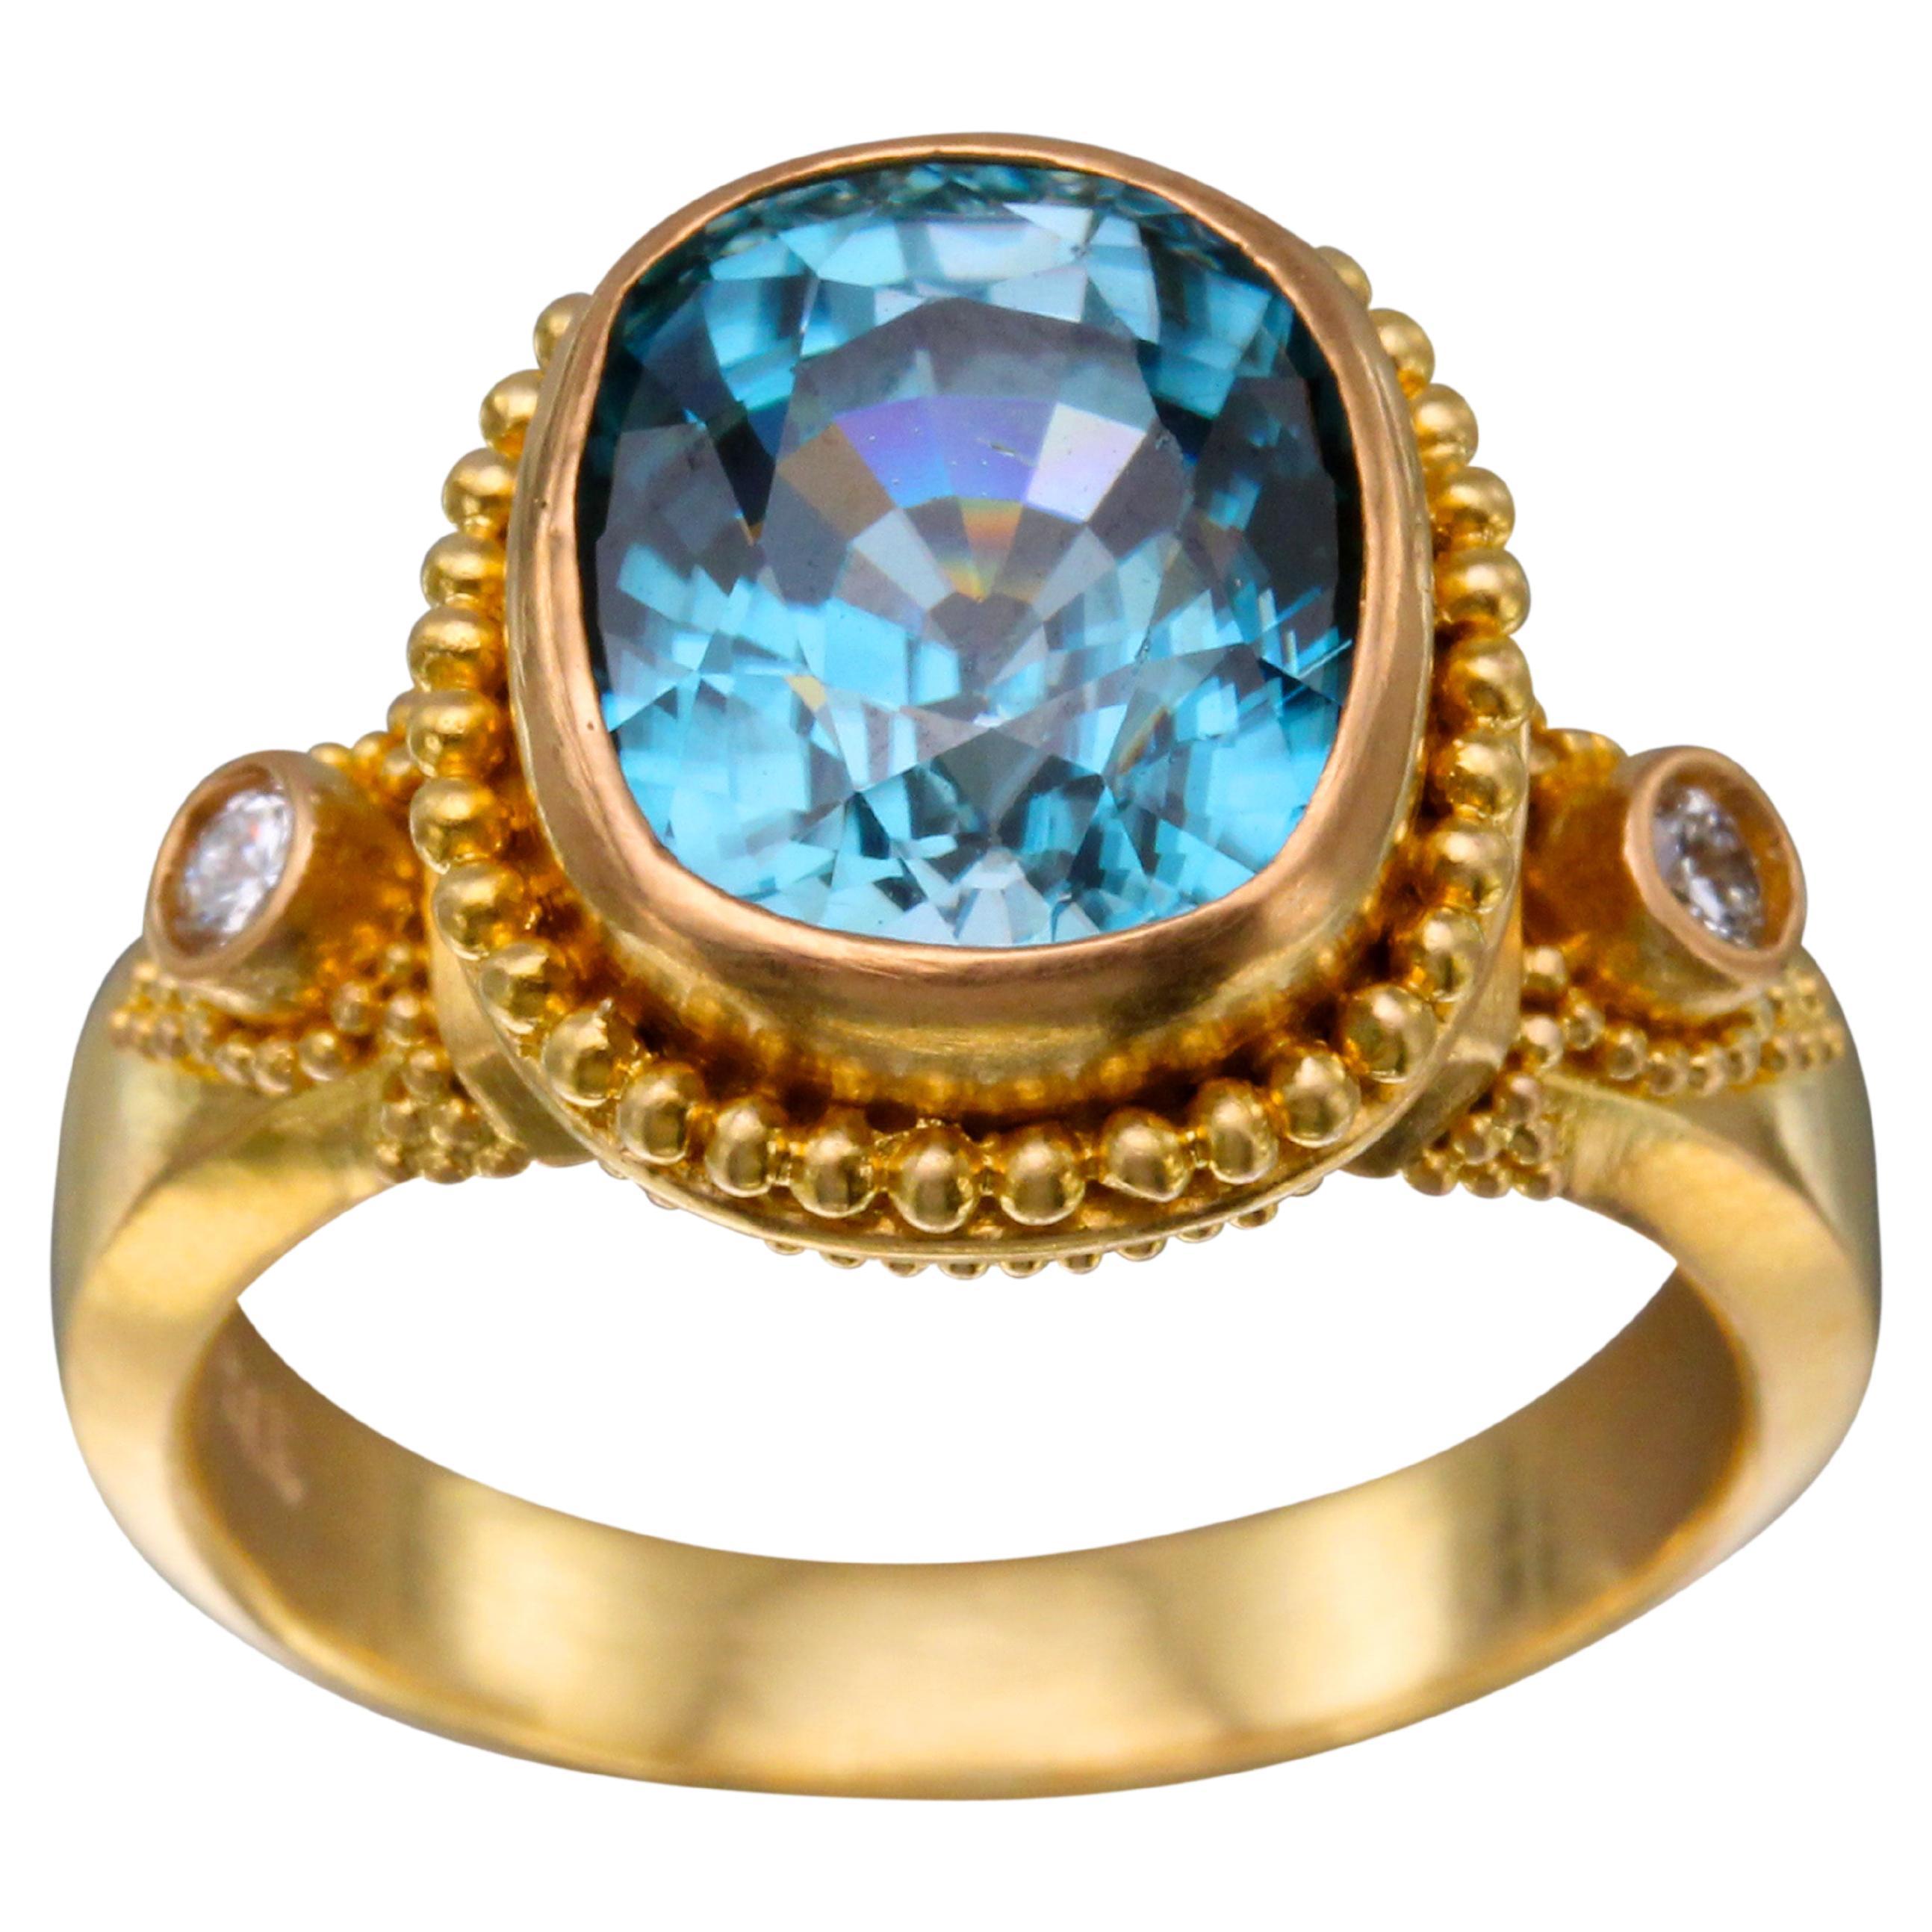 Steven Battelle 7.2 Carats Blue Zircon Diamonds 22k Gold Ring For Sale